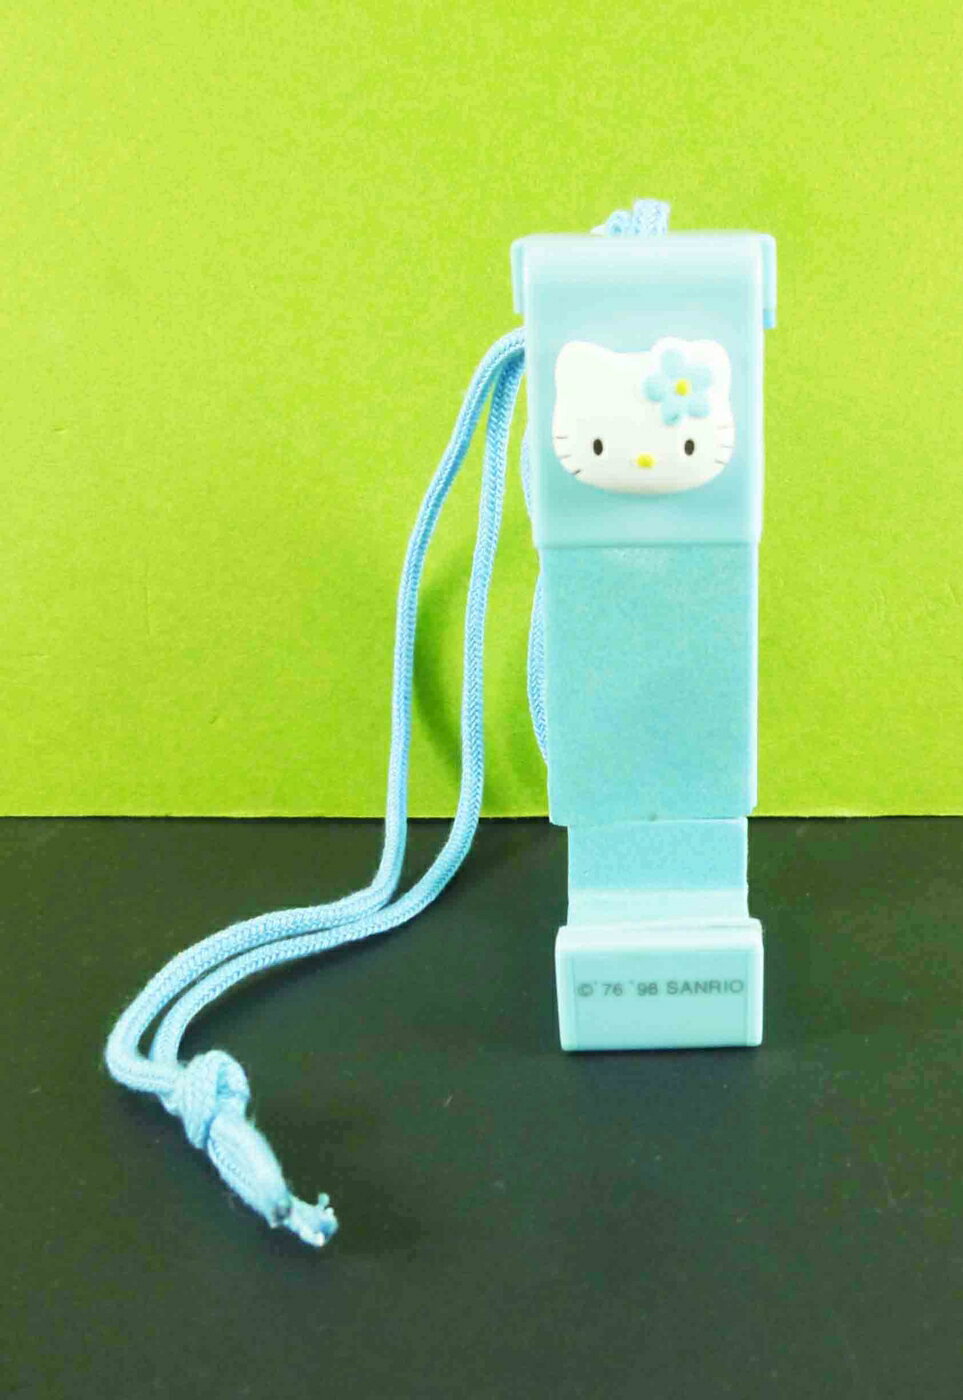 【震撼精品百貨】Hello Kitty 凱蒂貓 伸縮相機帶-藍 震撼日式精品百貨